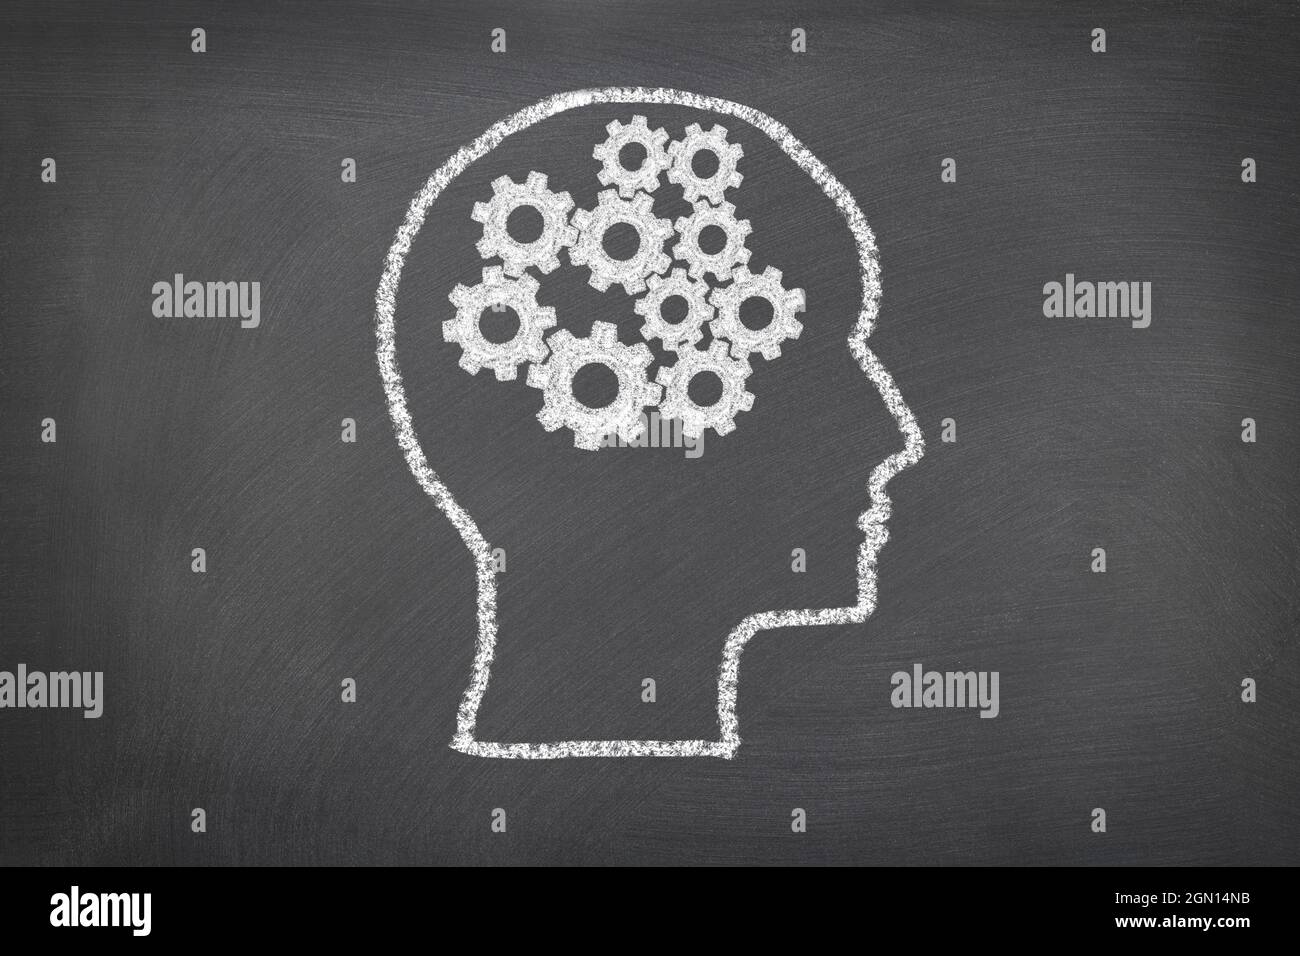 Eine Kreideskizze auf einer Tafel mit einem menschlichen Kopf und Zahnrädern, die Gedanken darstellen, für die Verwendung als jedes wissenschaftliche Thema oder zur Betrachtung des Denkens des Menschen. Stockfoto